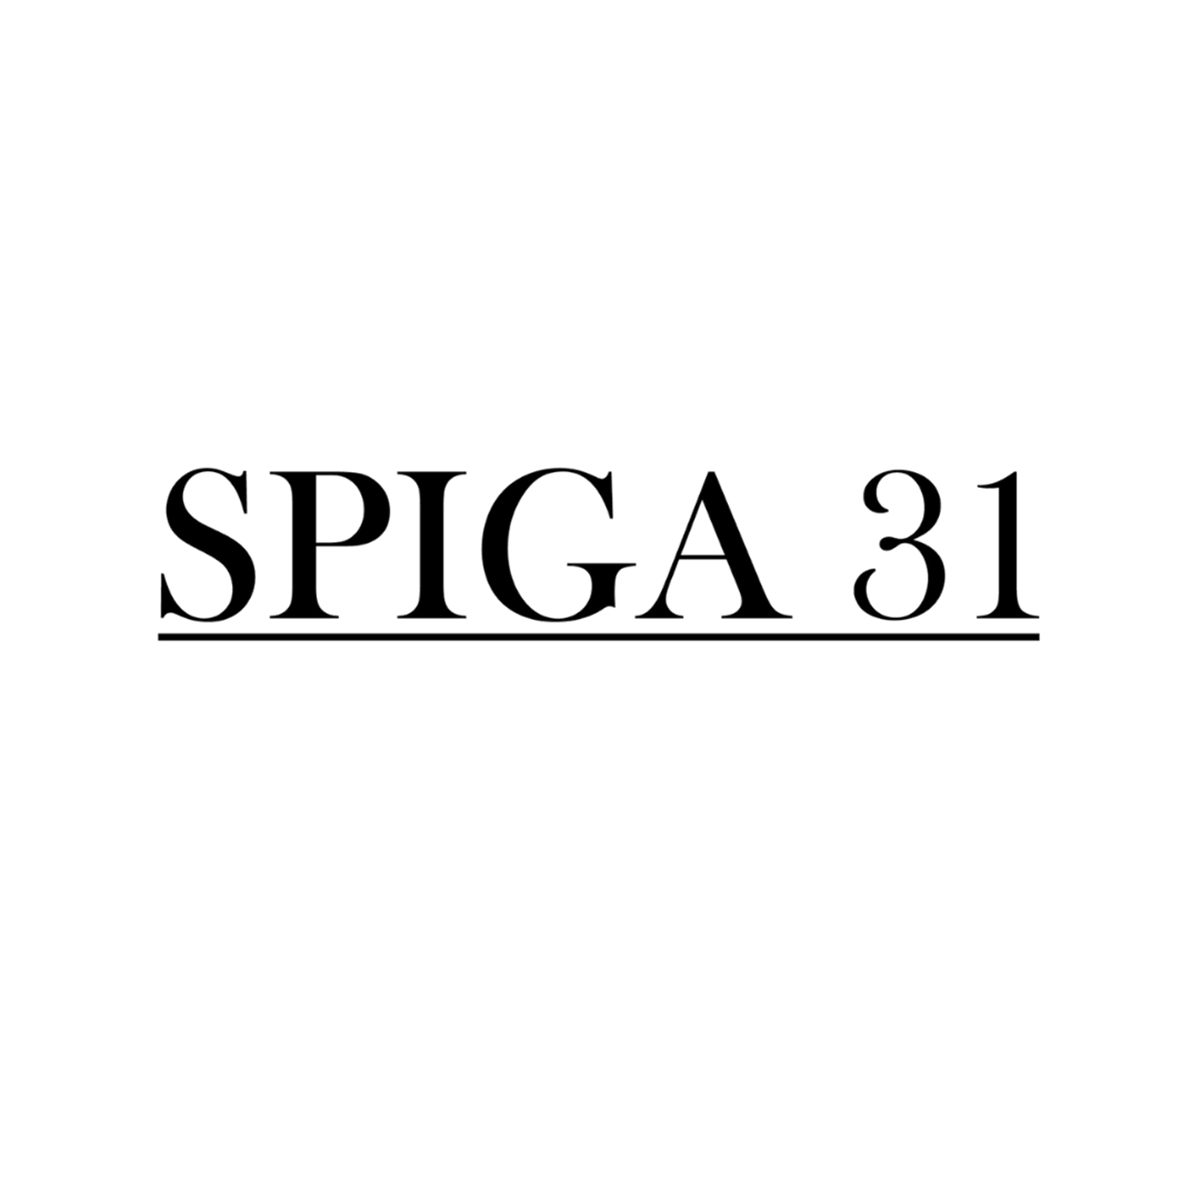 SPIGA31